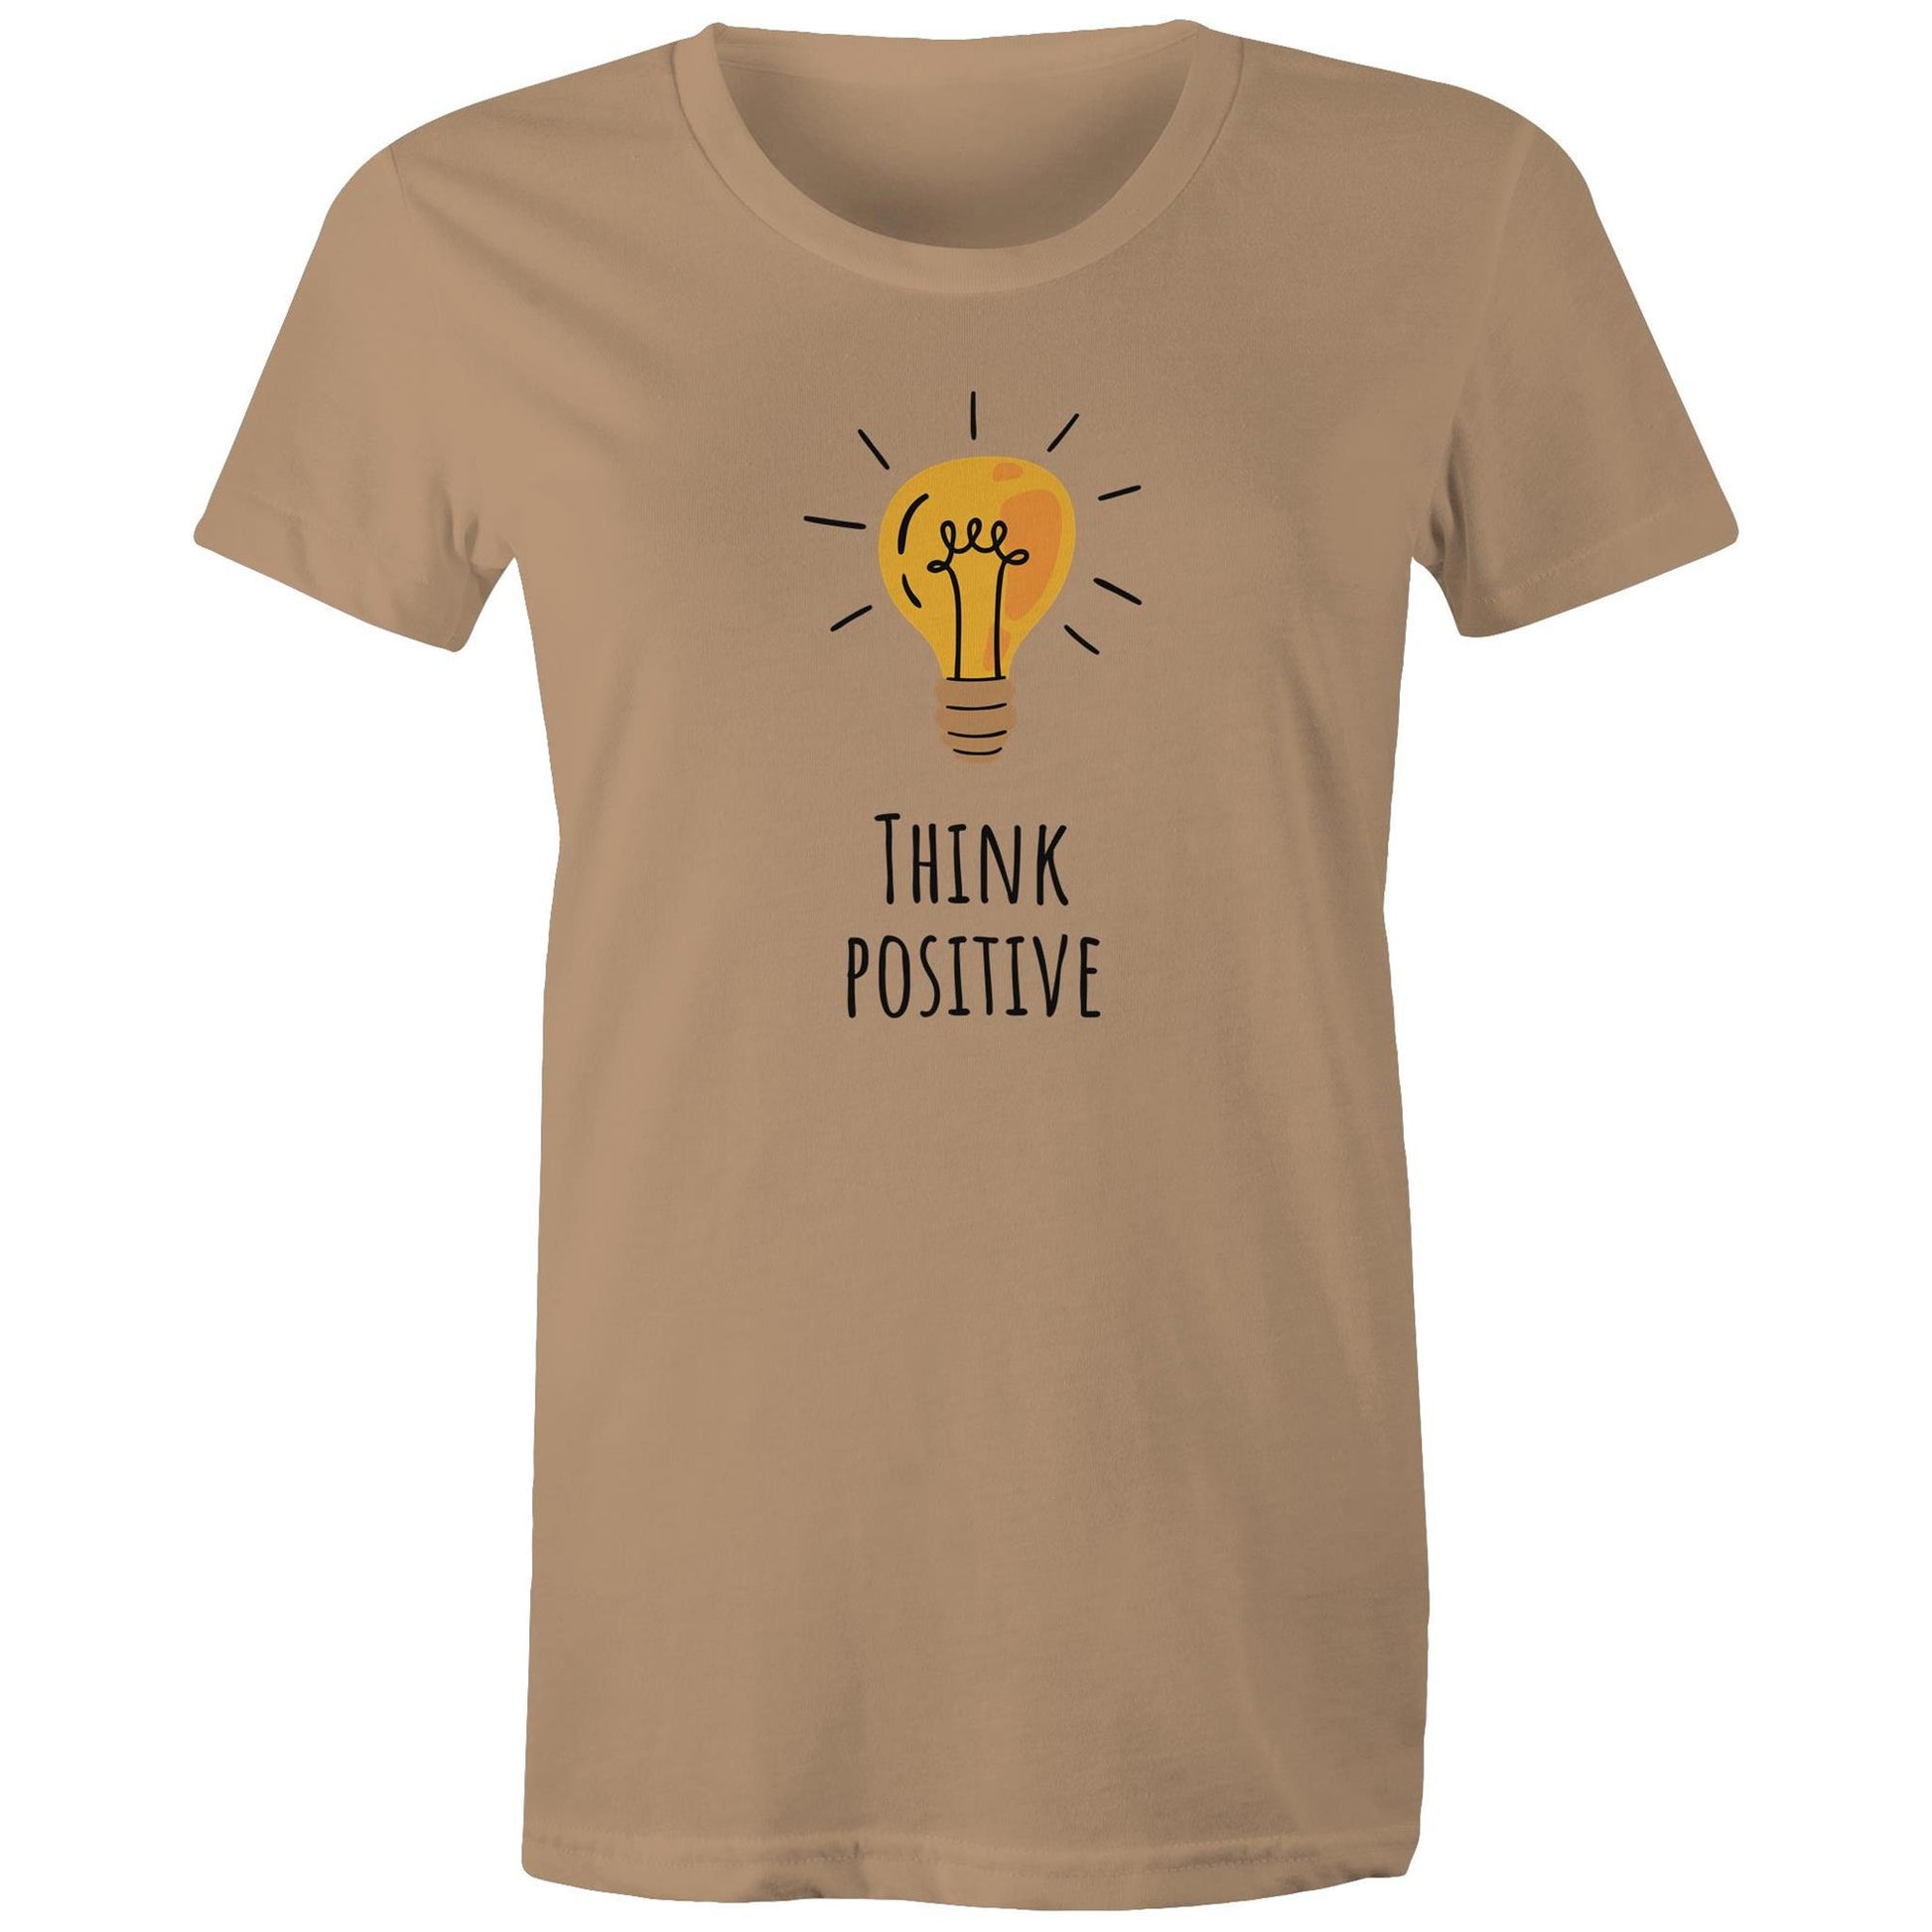 Think Positive - Womens T-shirt Tan Womens T-shirt Motivation